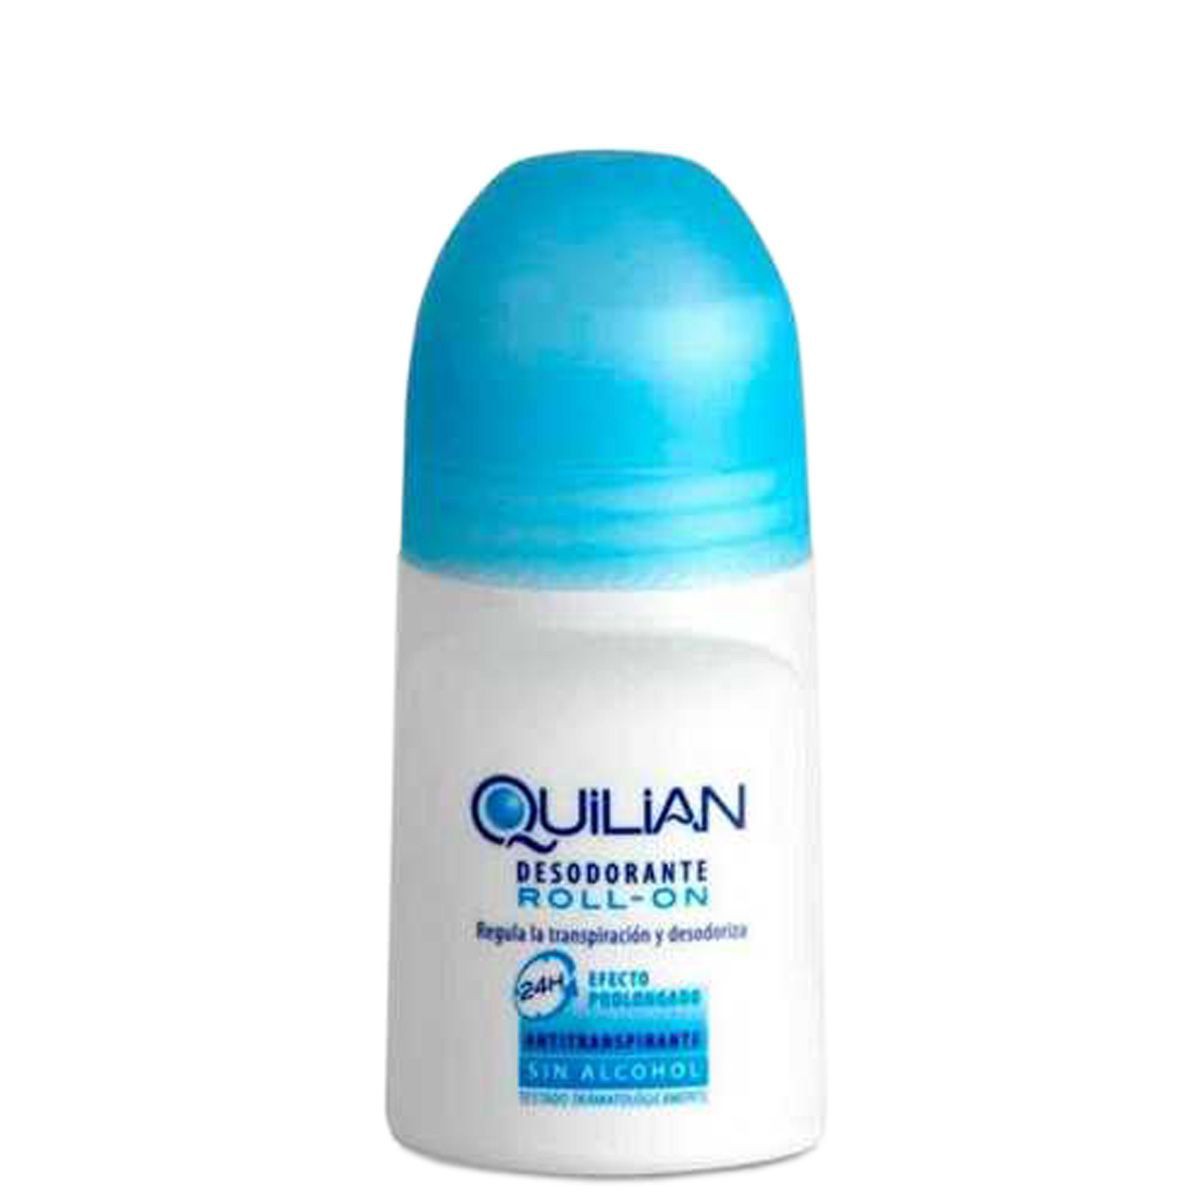 Quilian Desodorante Roll-on 50 ml